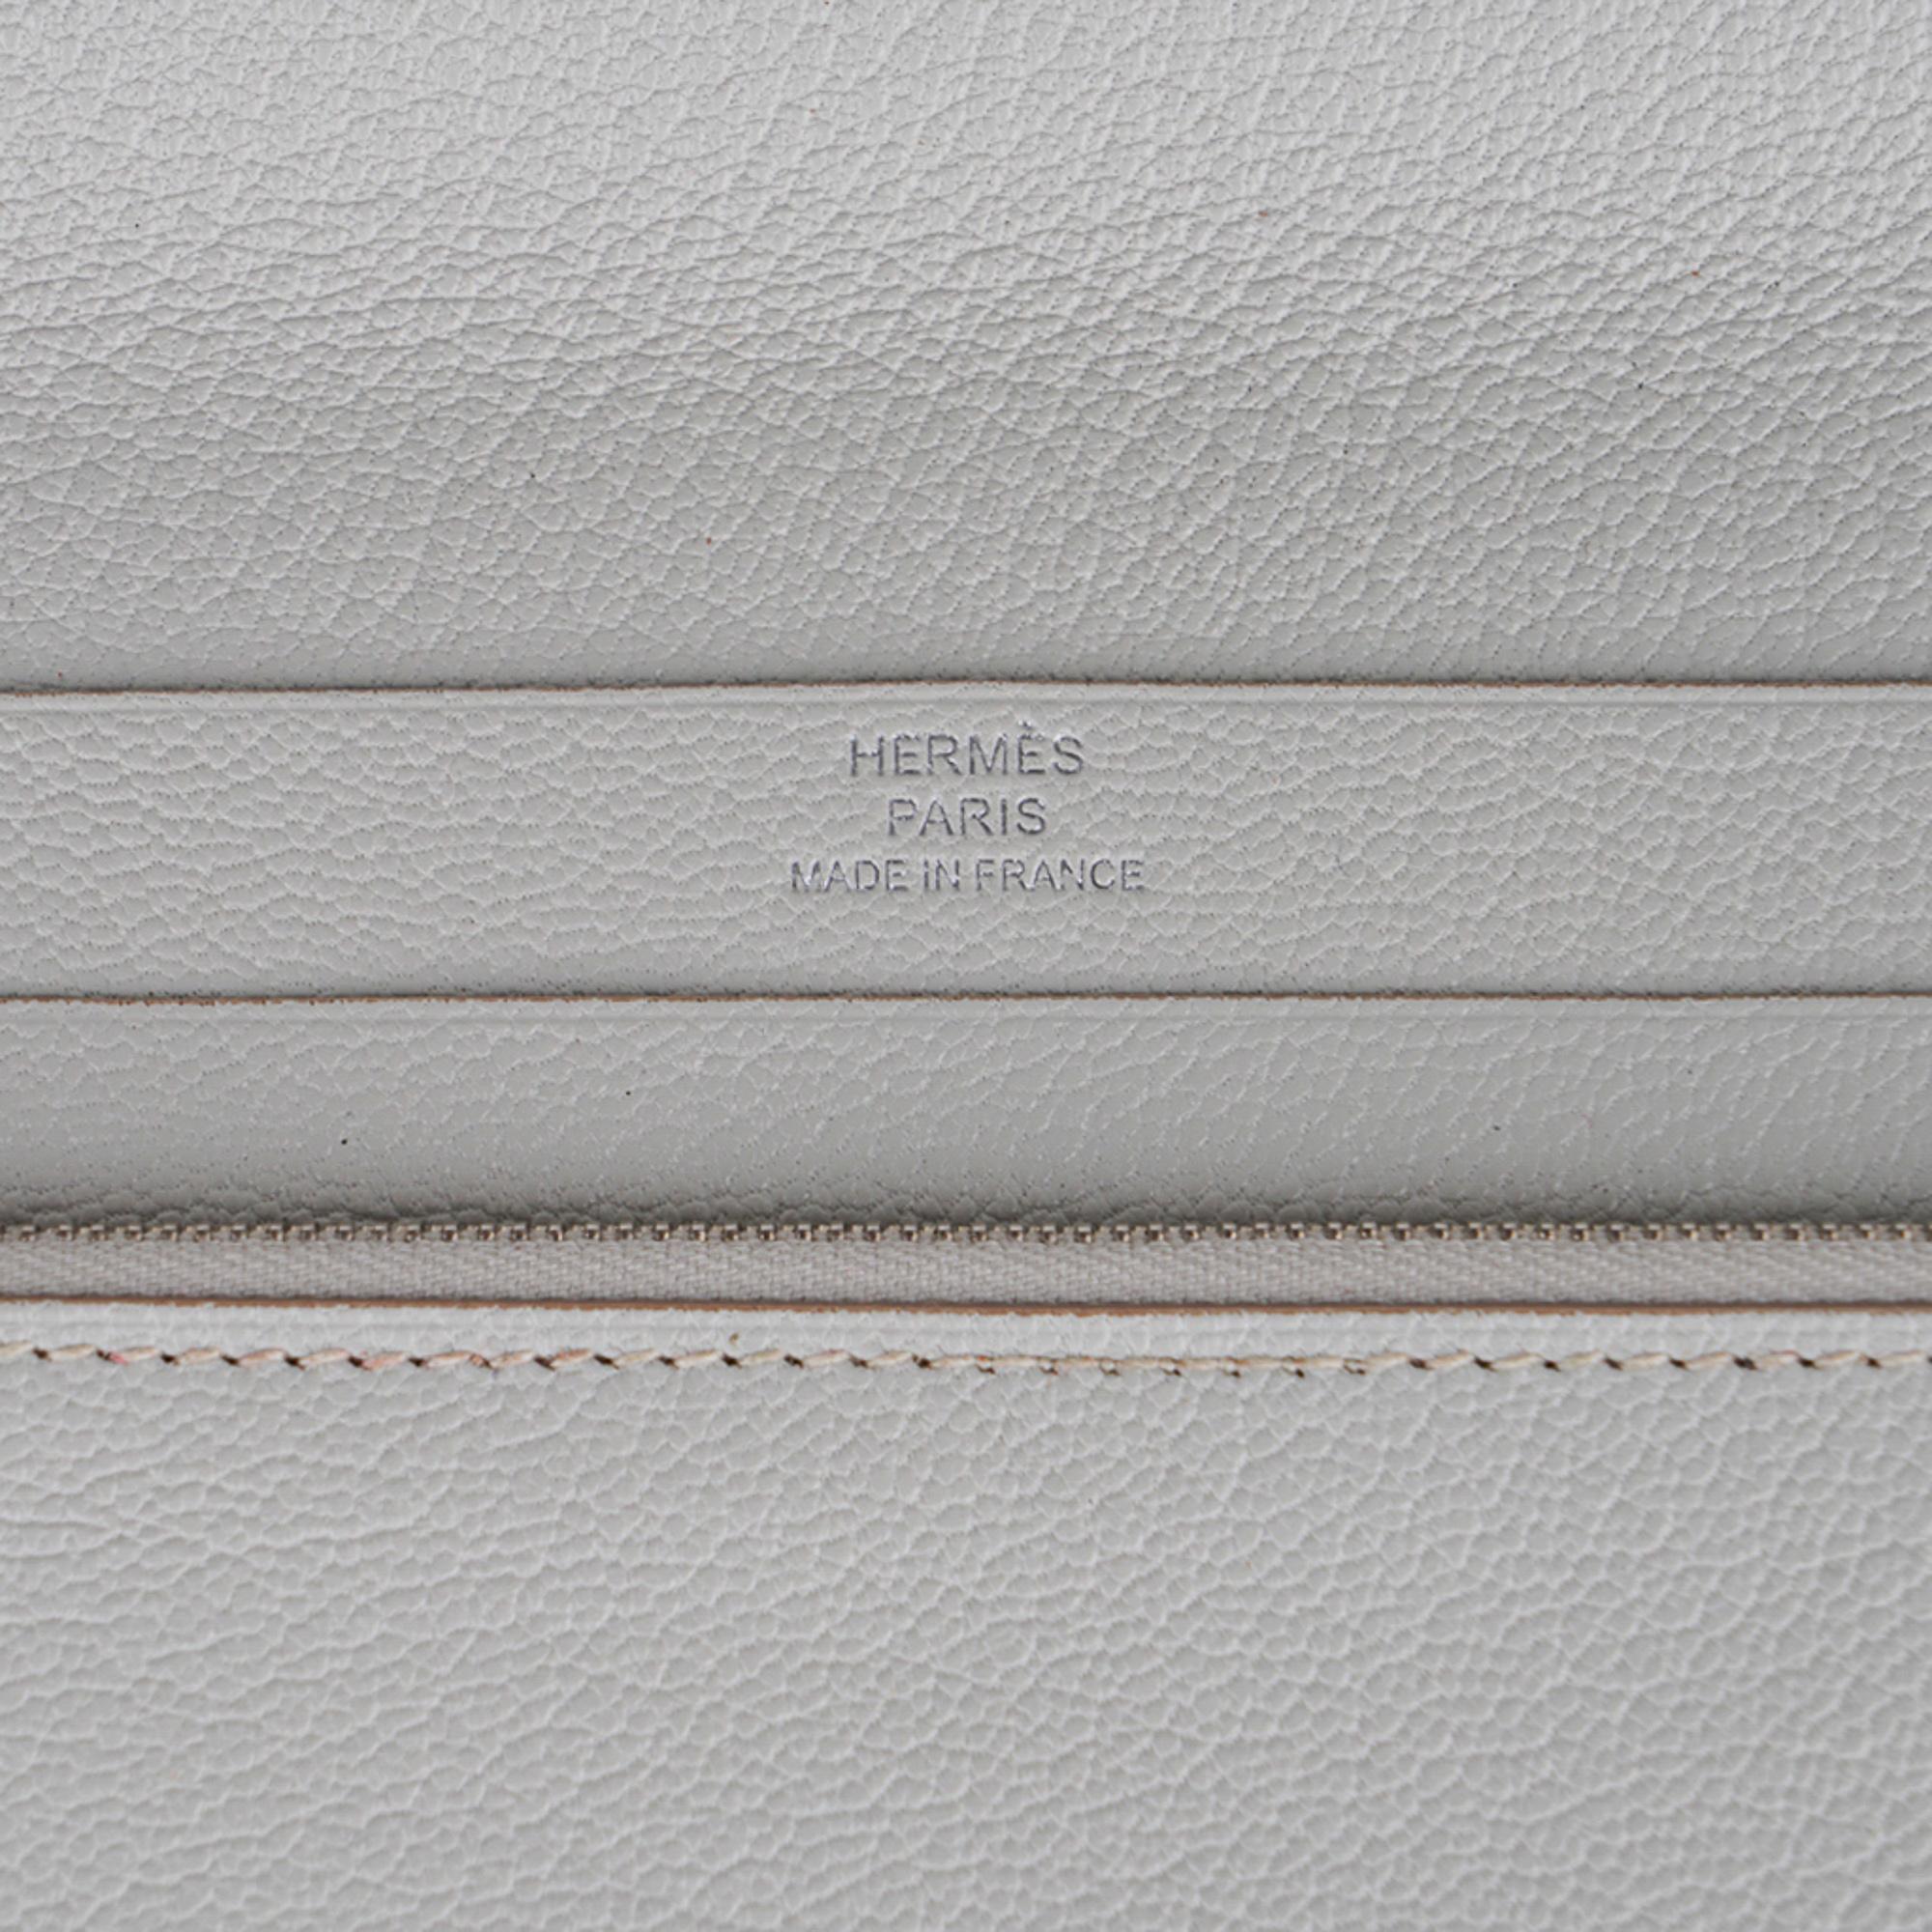 Hermes Azap Portefeuille Wallet Gris Perle Chevre Leather Palladium Hardware New For Sale 3